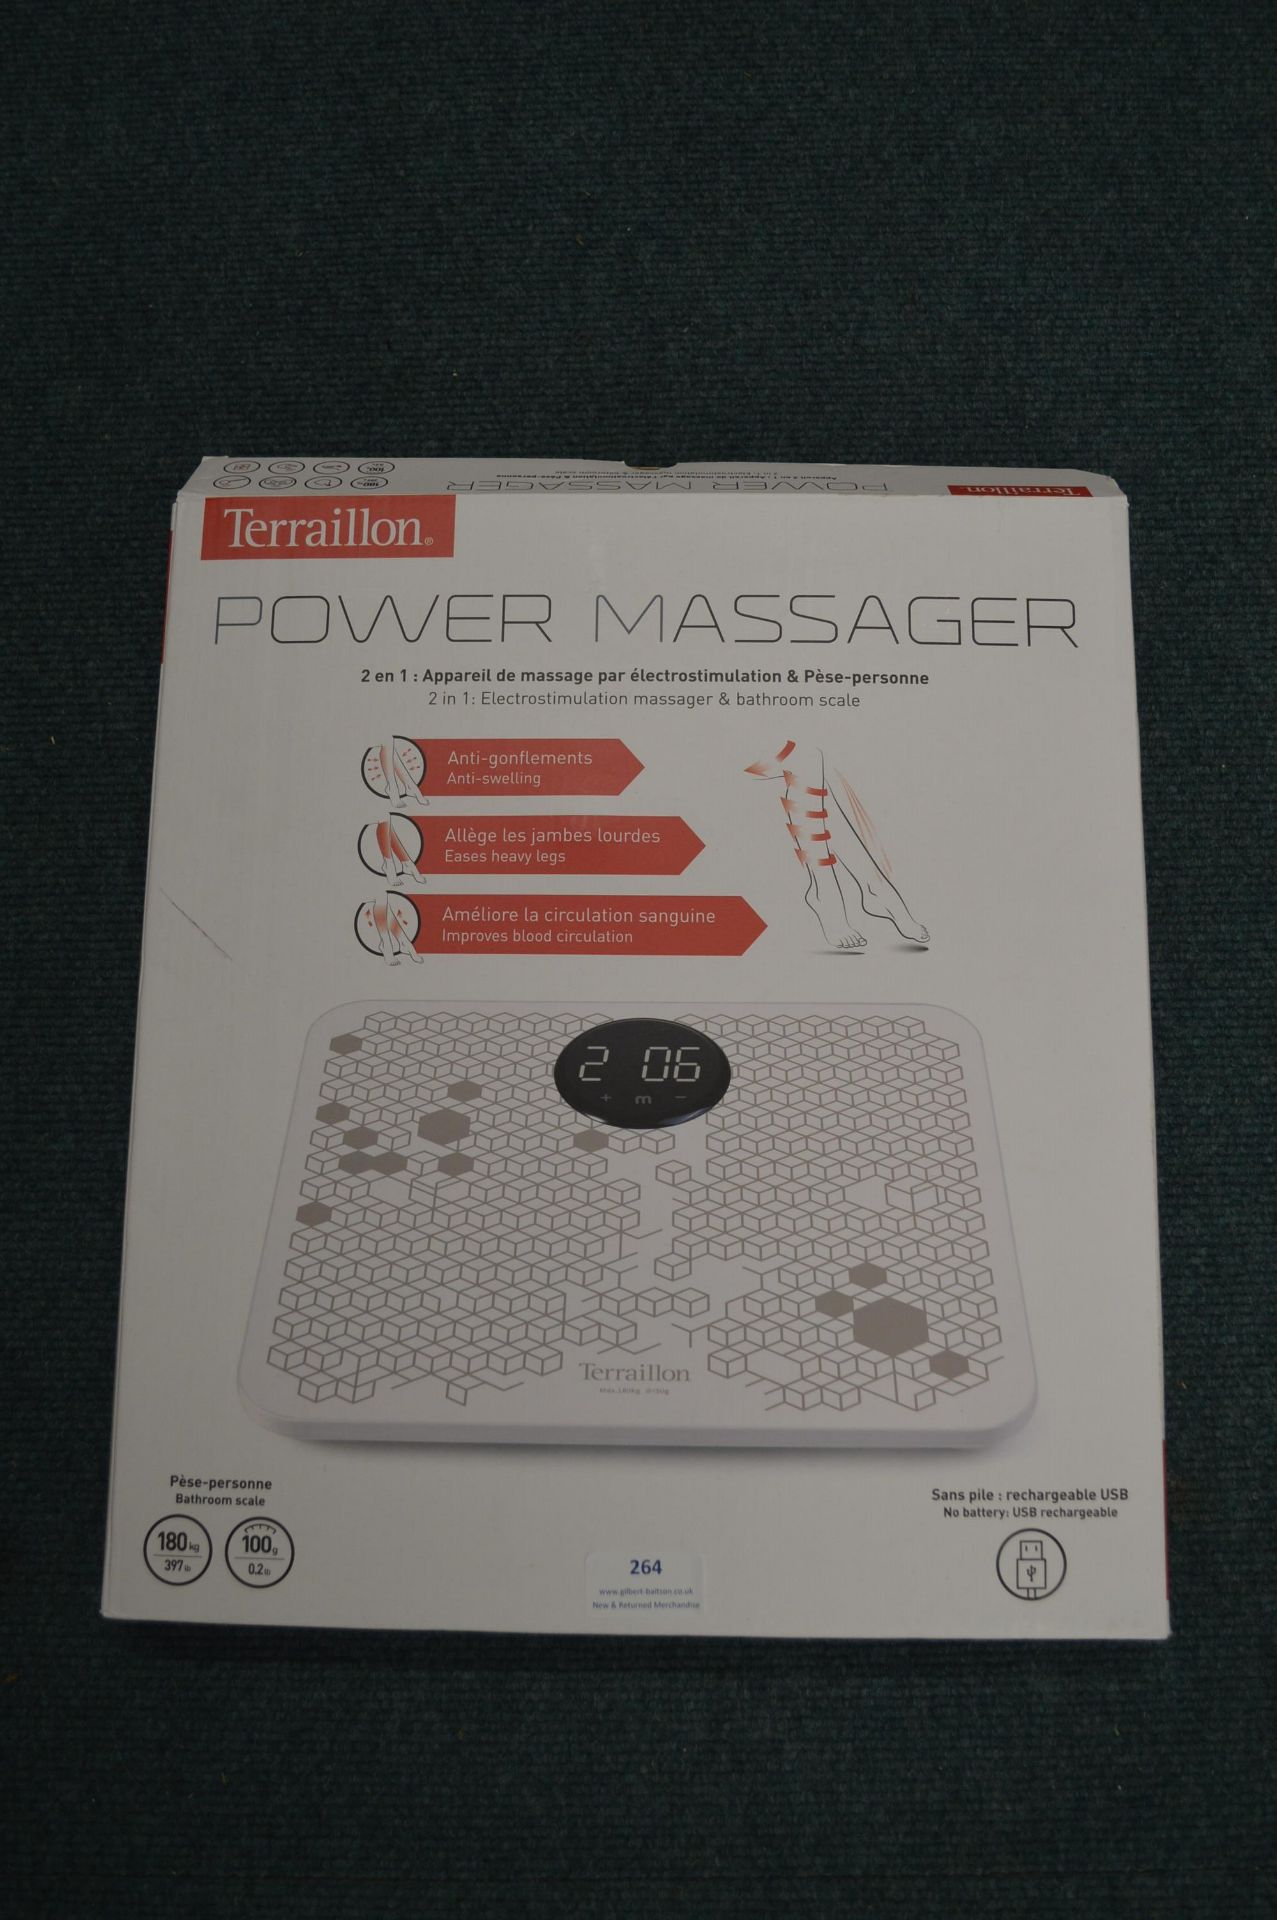 *Terraillon Power Massager